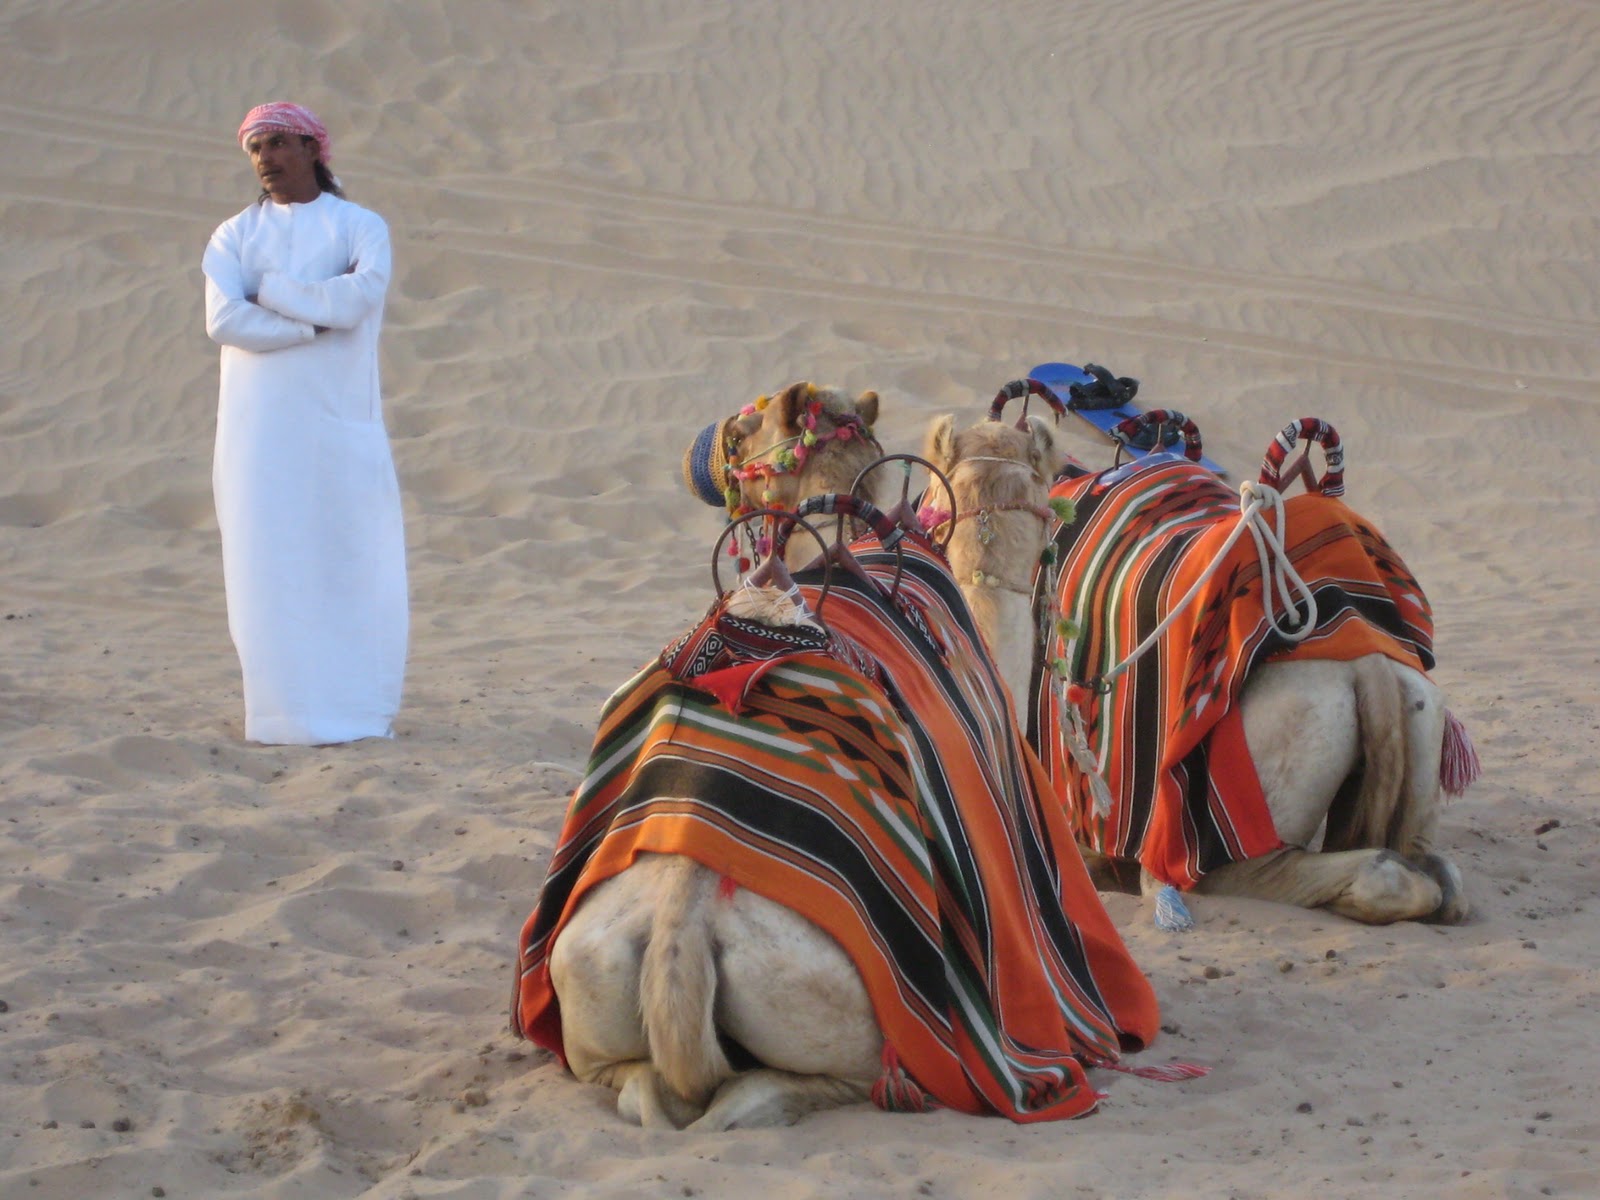 Bildresultat för kamelridning dubai